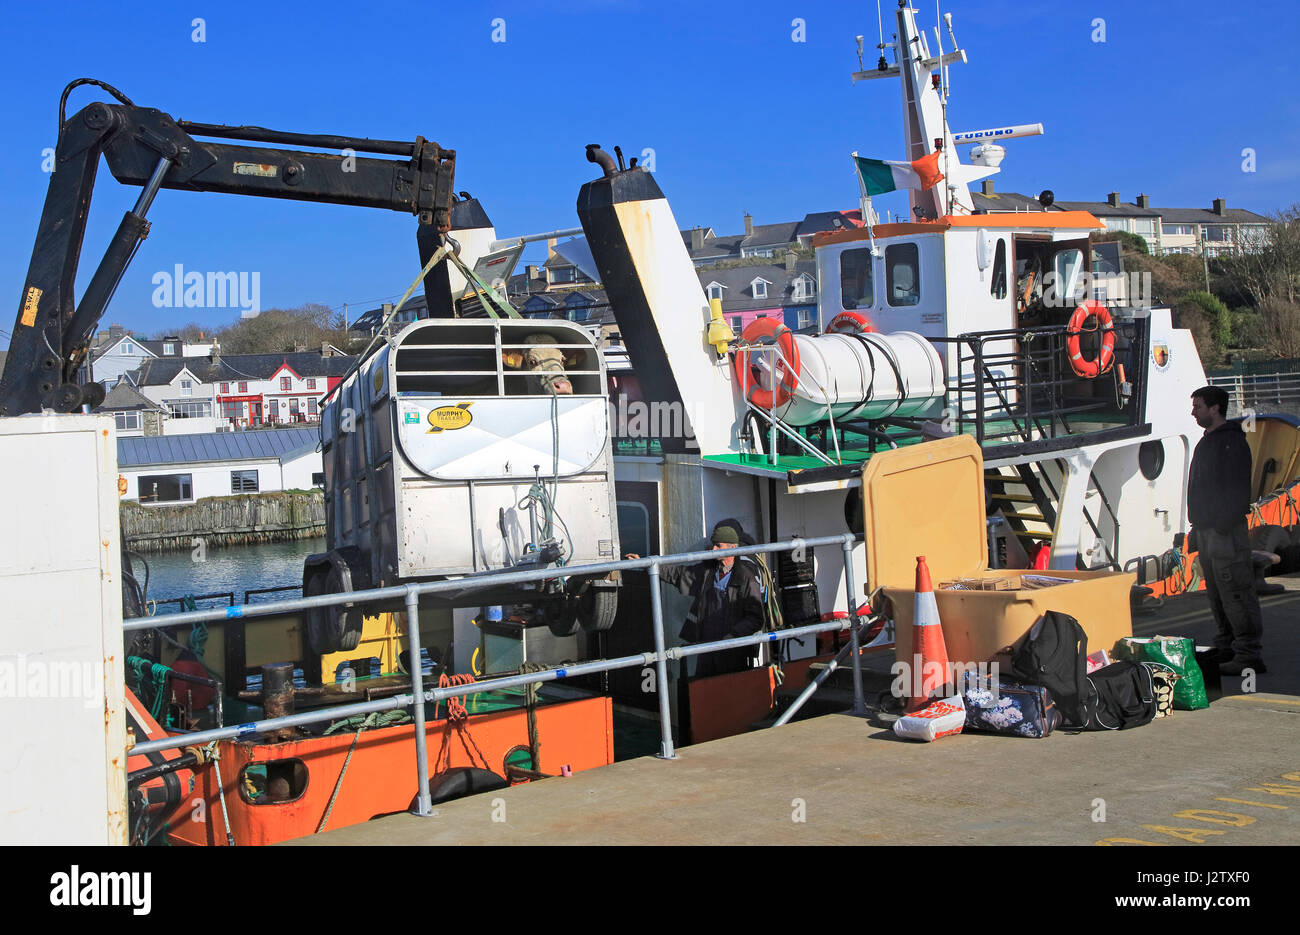 Kuh von Cape Clear entladen wird Fähre Baltimore Hafen, County Cork, Irland, Republik Irland Stockfoto